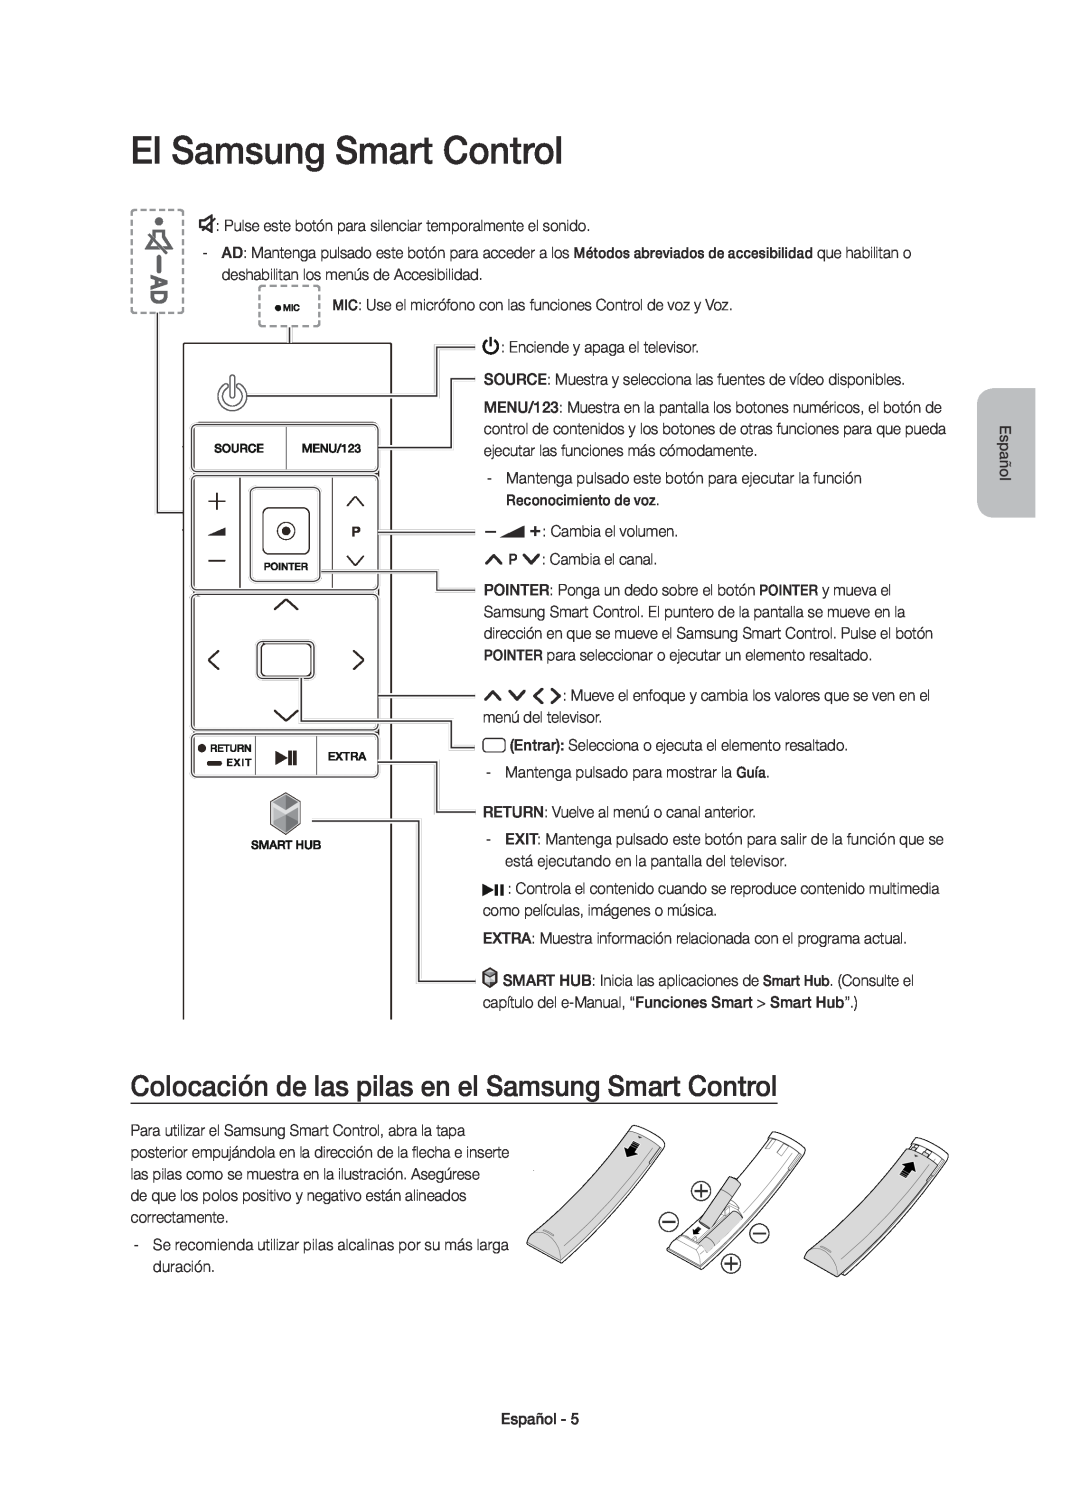 Samsung UE78JS9500TXXU, UE88JS9500TXZF manual El Samsung Smart Control, Colocación de las pilas en el Samsung Smart Control 